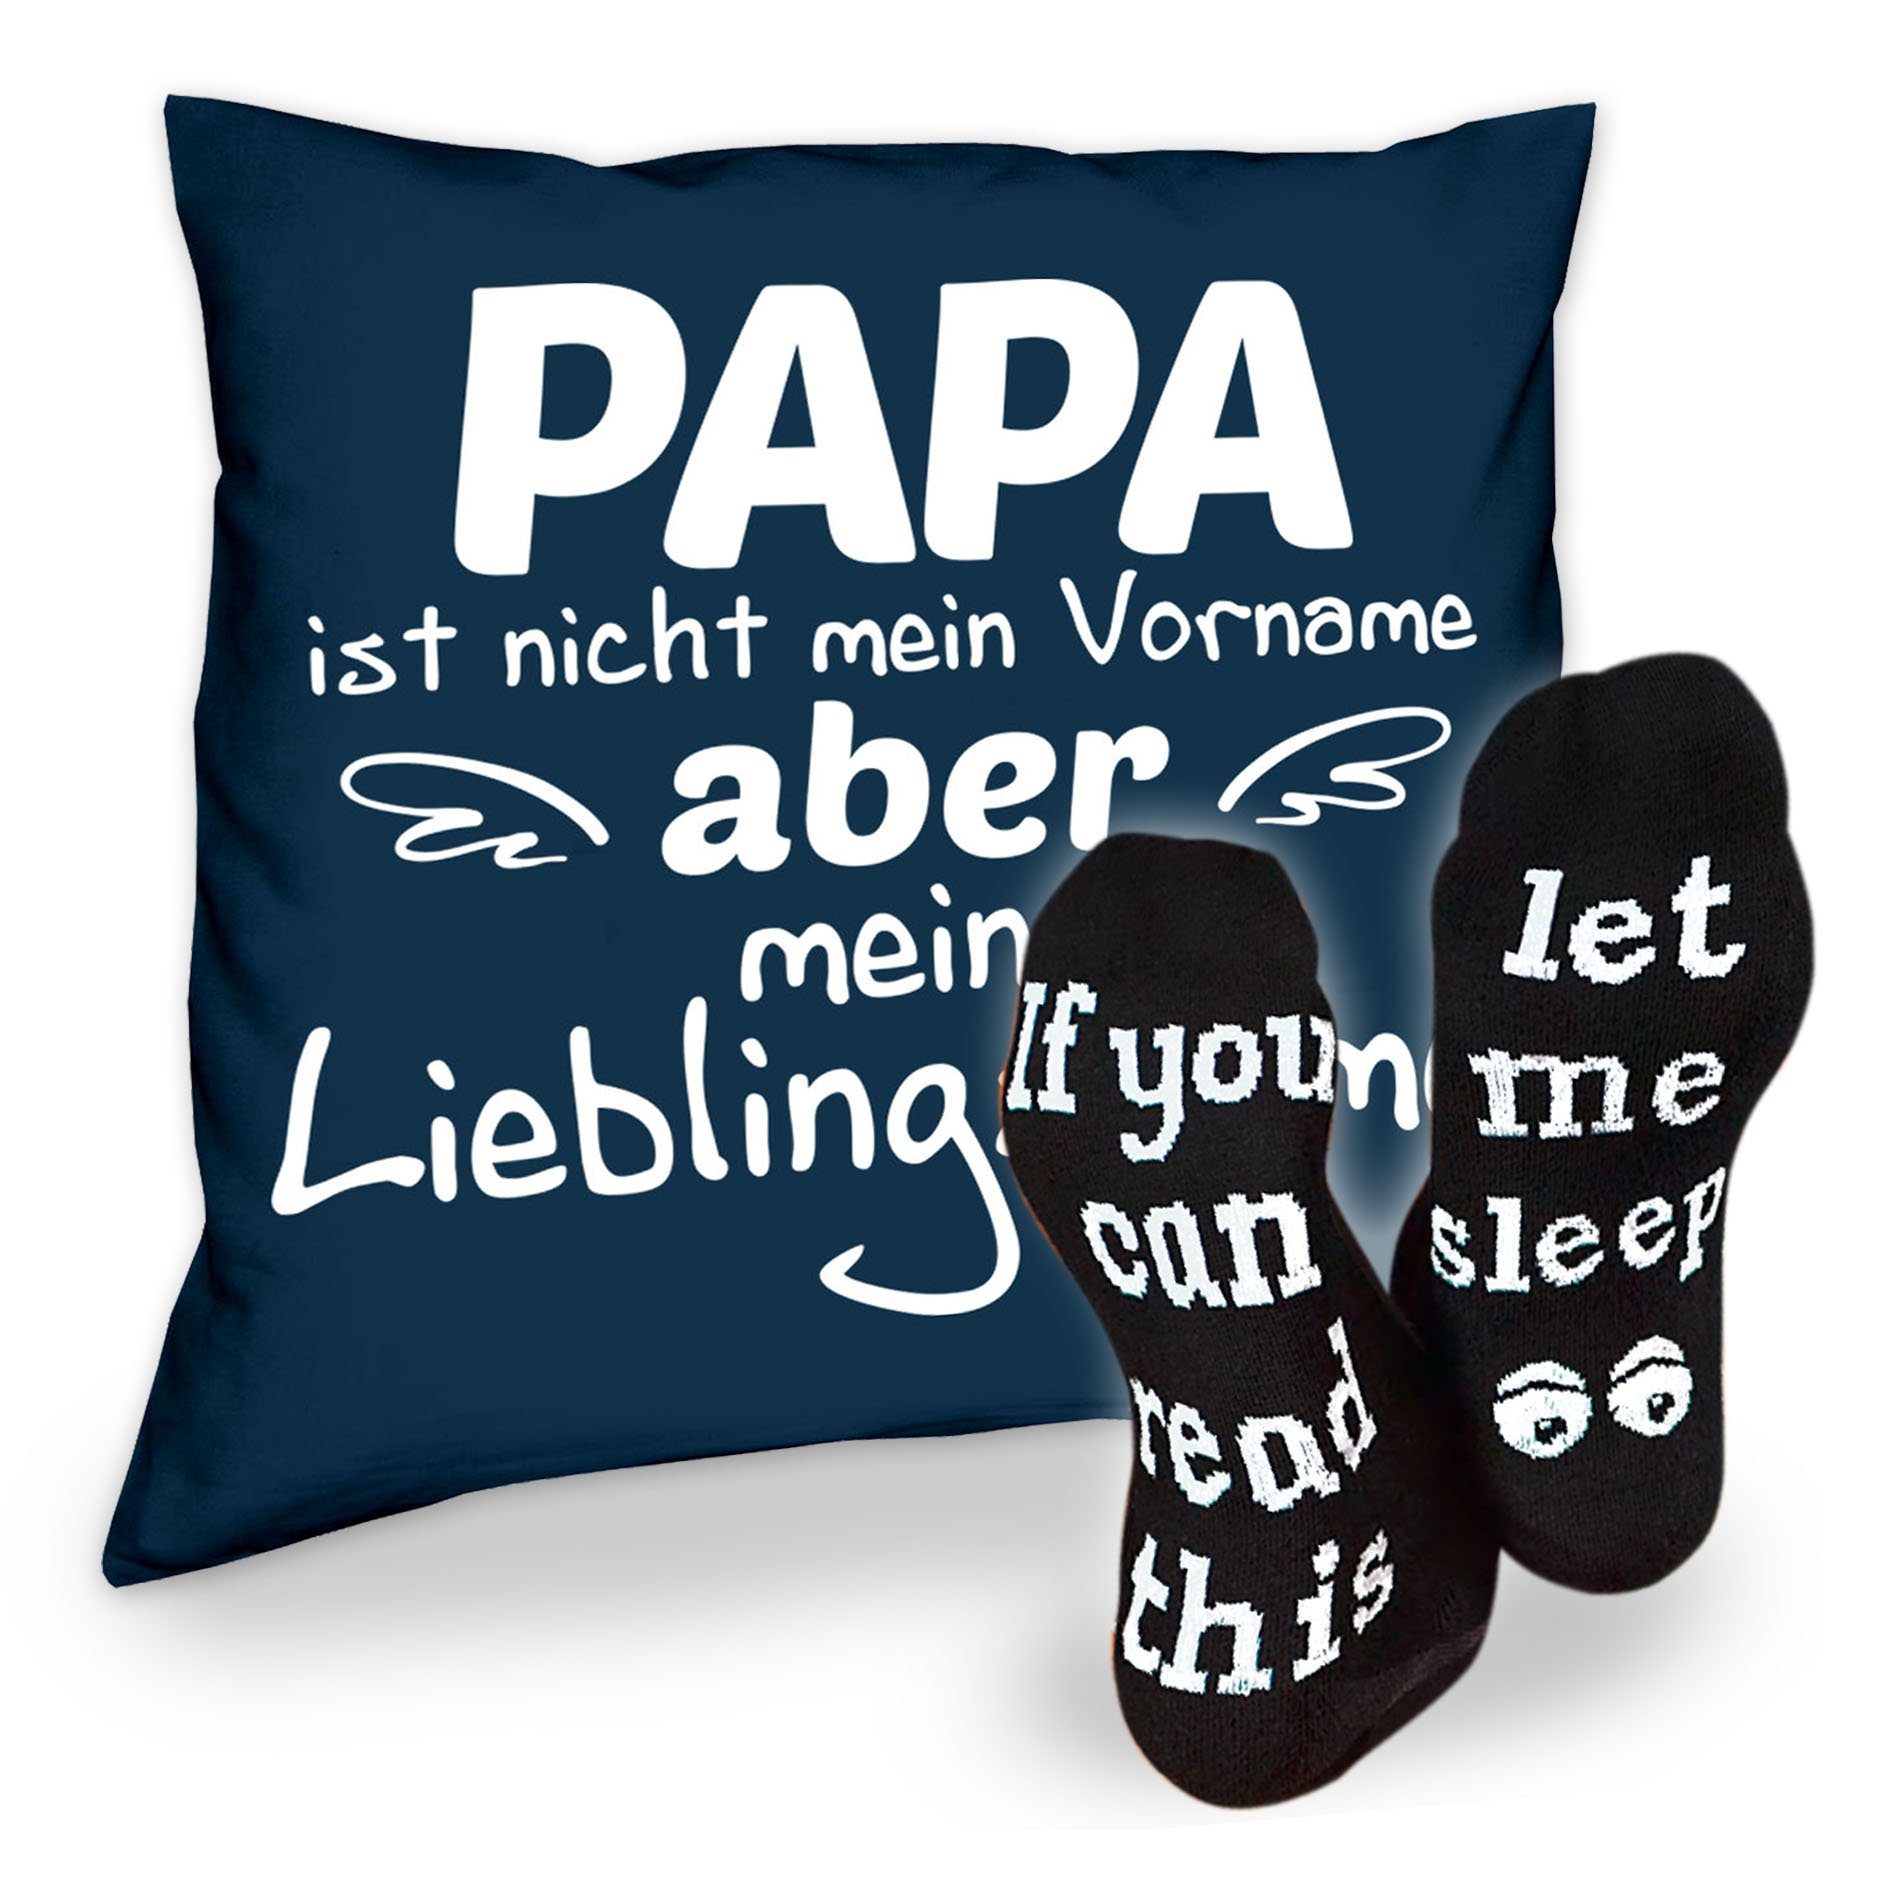 Soreso® Dekokissen Kissen Papa Lieblingsname & Sprüche Socken Sleep, Geschenkidee Weihnachtsgeschenk navy-blau